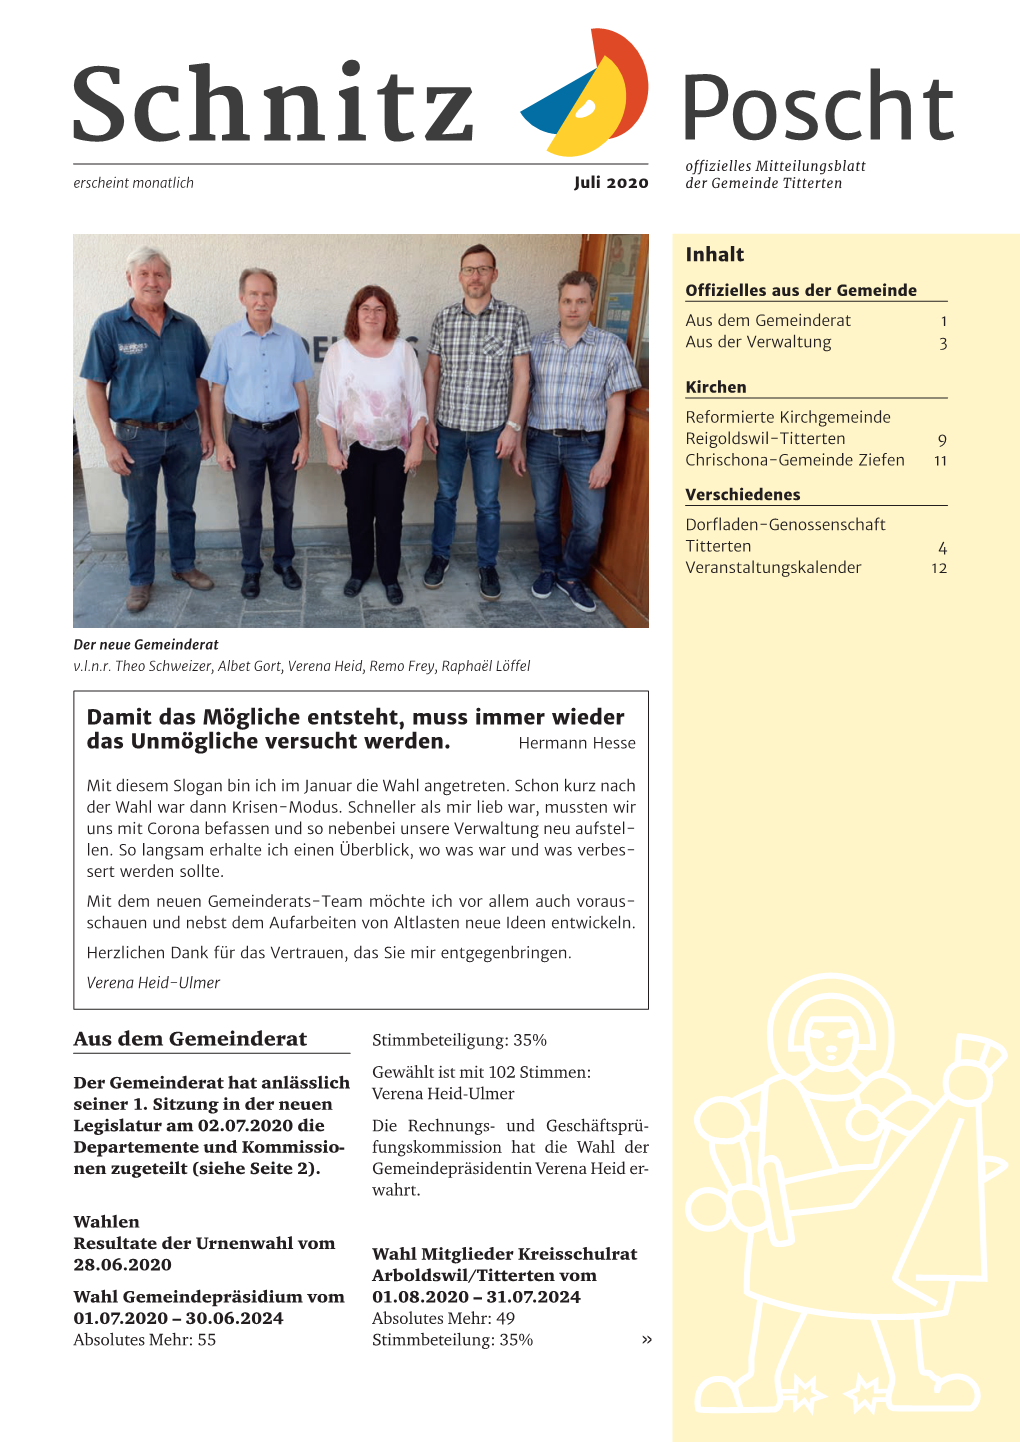 Schnitz Poscht Offizielles Mitteilungsblatt Erscheint Monatlich Juli 2020 Der Gemeinde Titterten